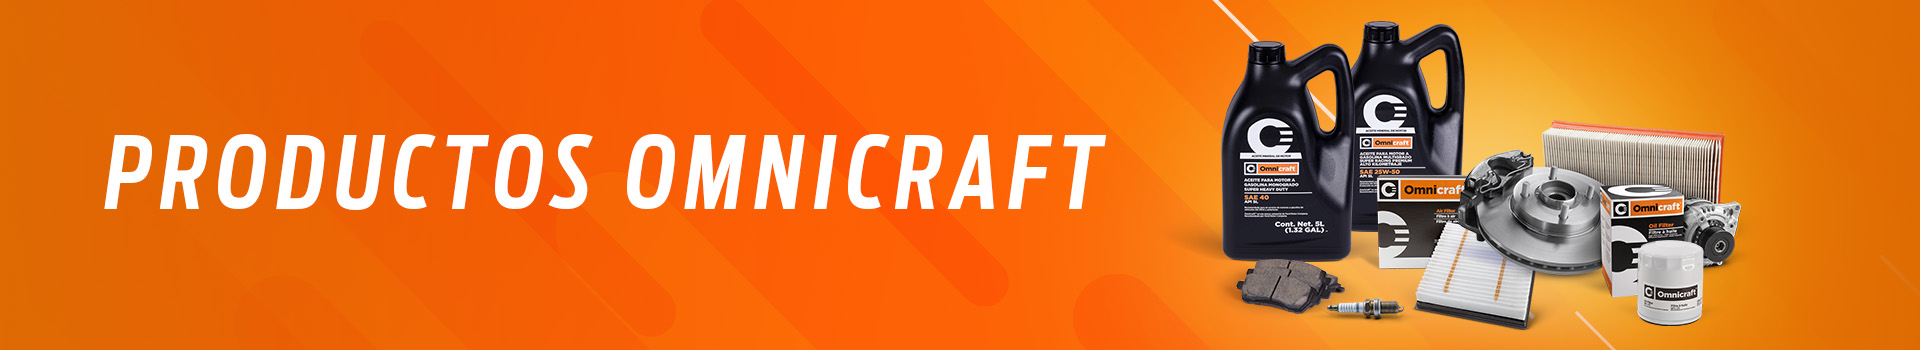 Productos Omnicraft son refacciones de mayor calidad para todo tipo de vehículos a precios justos